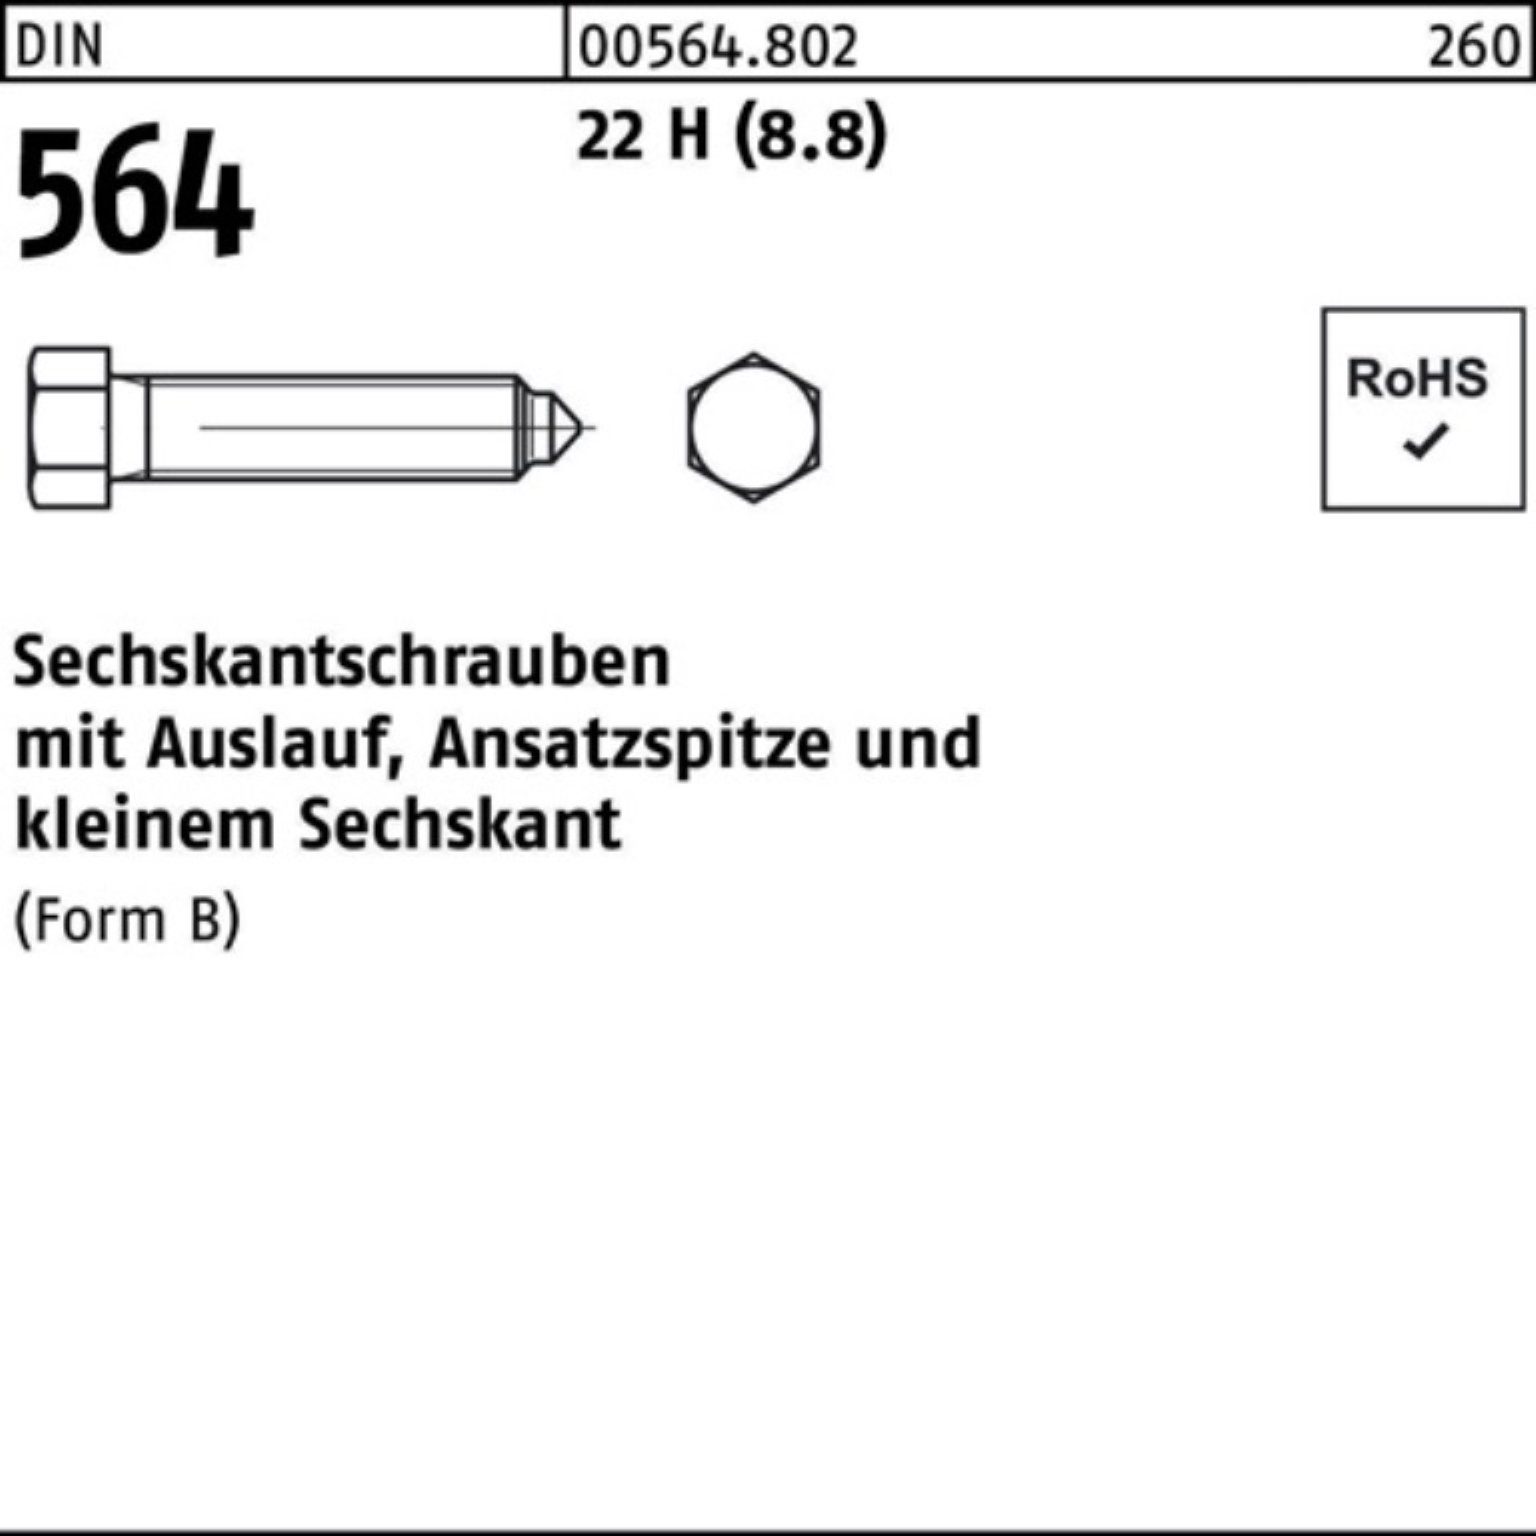 Sechskantschraube Ansatzspitze/Auslauf Sechskantschraube BM DIN 22 Reyher 100er 8x 30 564 Pack